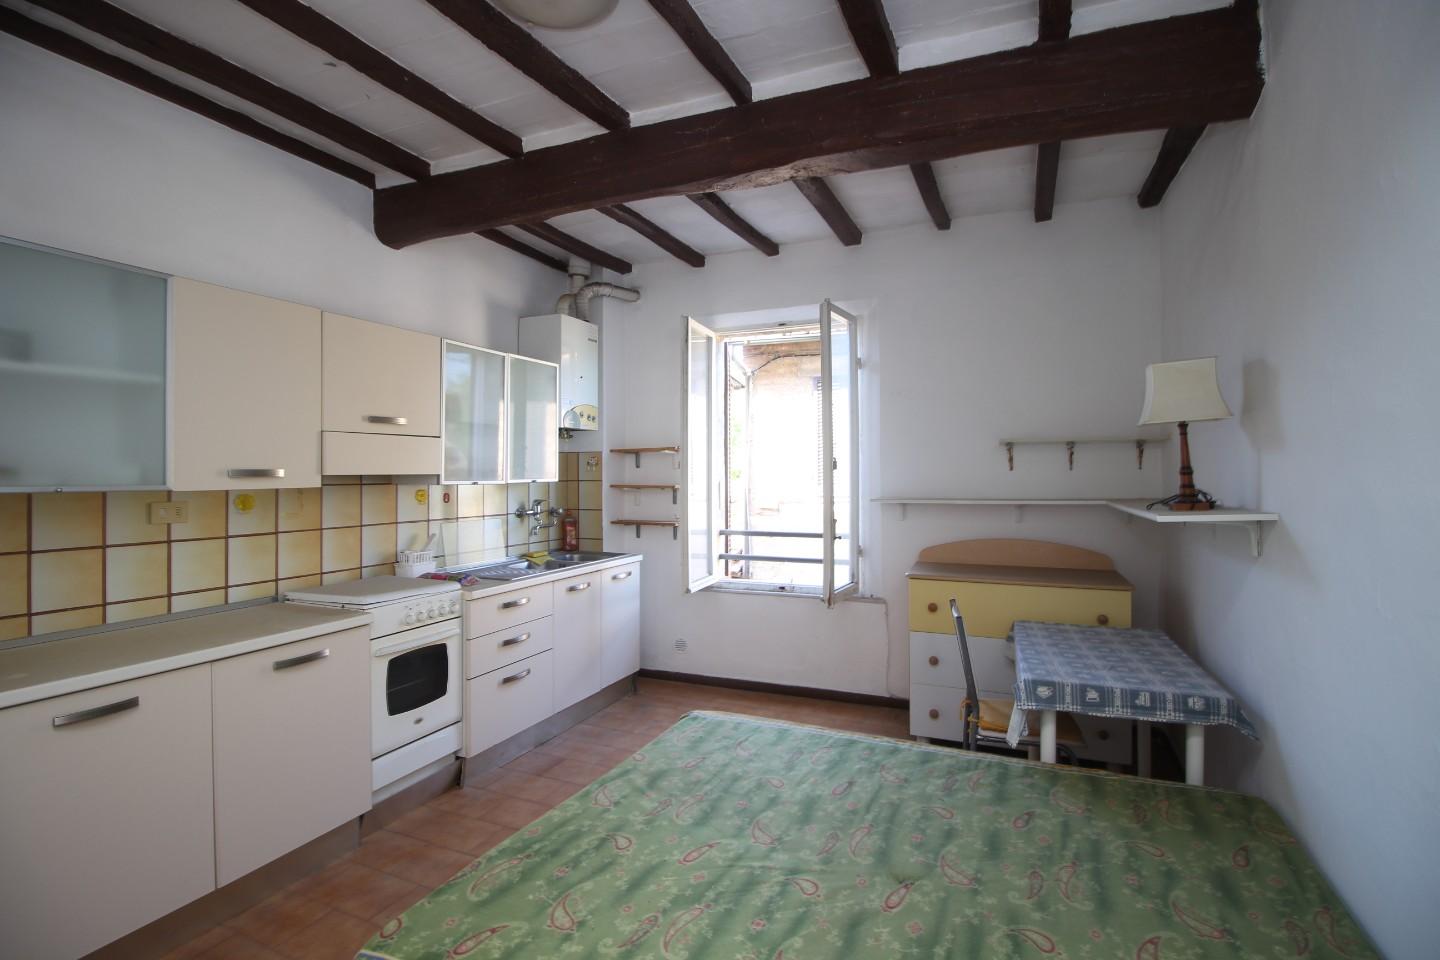 Appartamento in vendita a Monteroni d'Arbia, 2 locali, prezzo € 60.000 | PortaleAgenzieImmobiliari.it